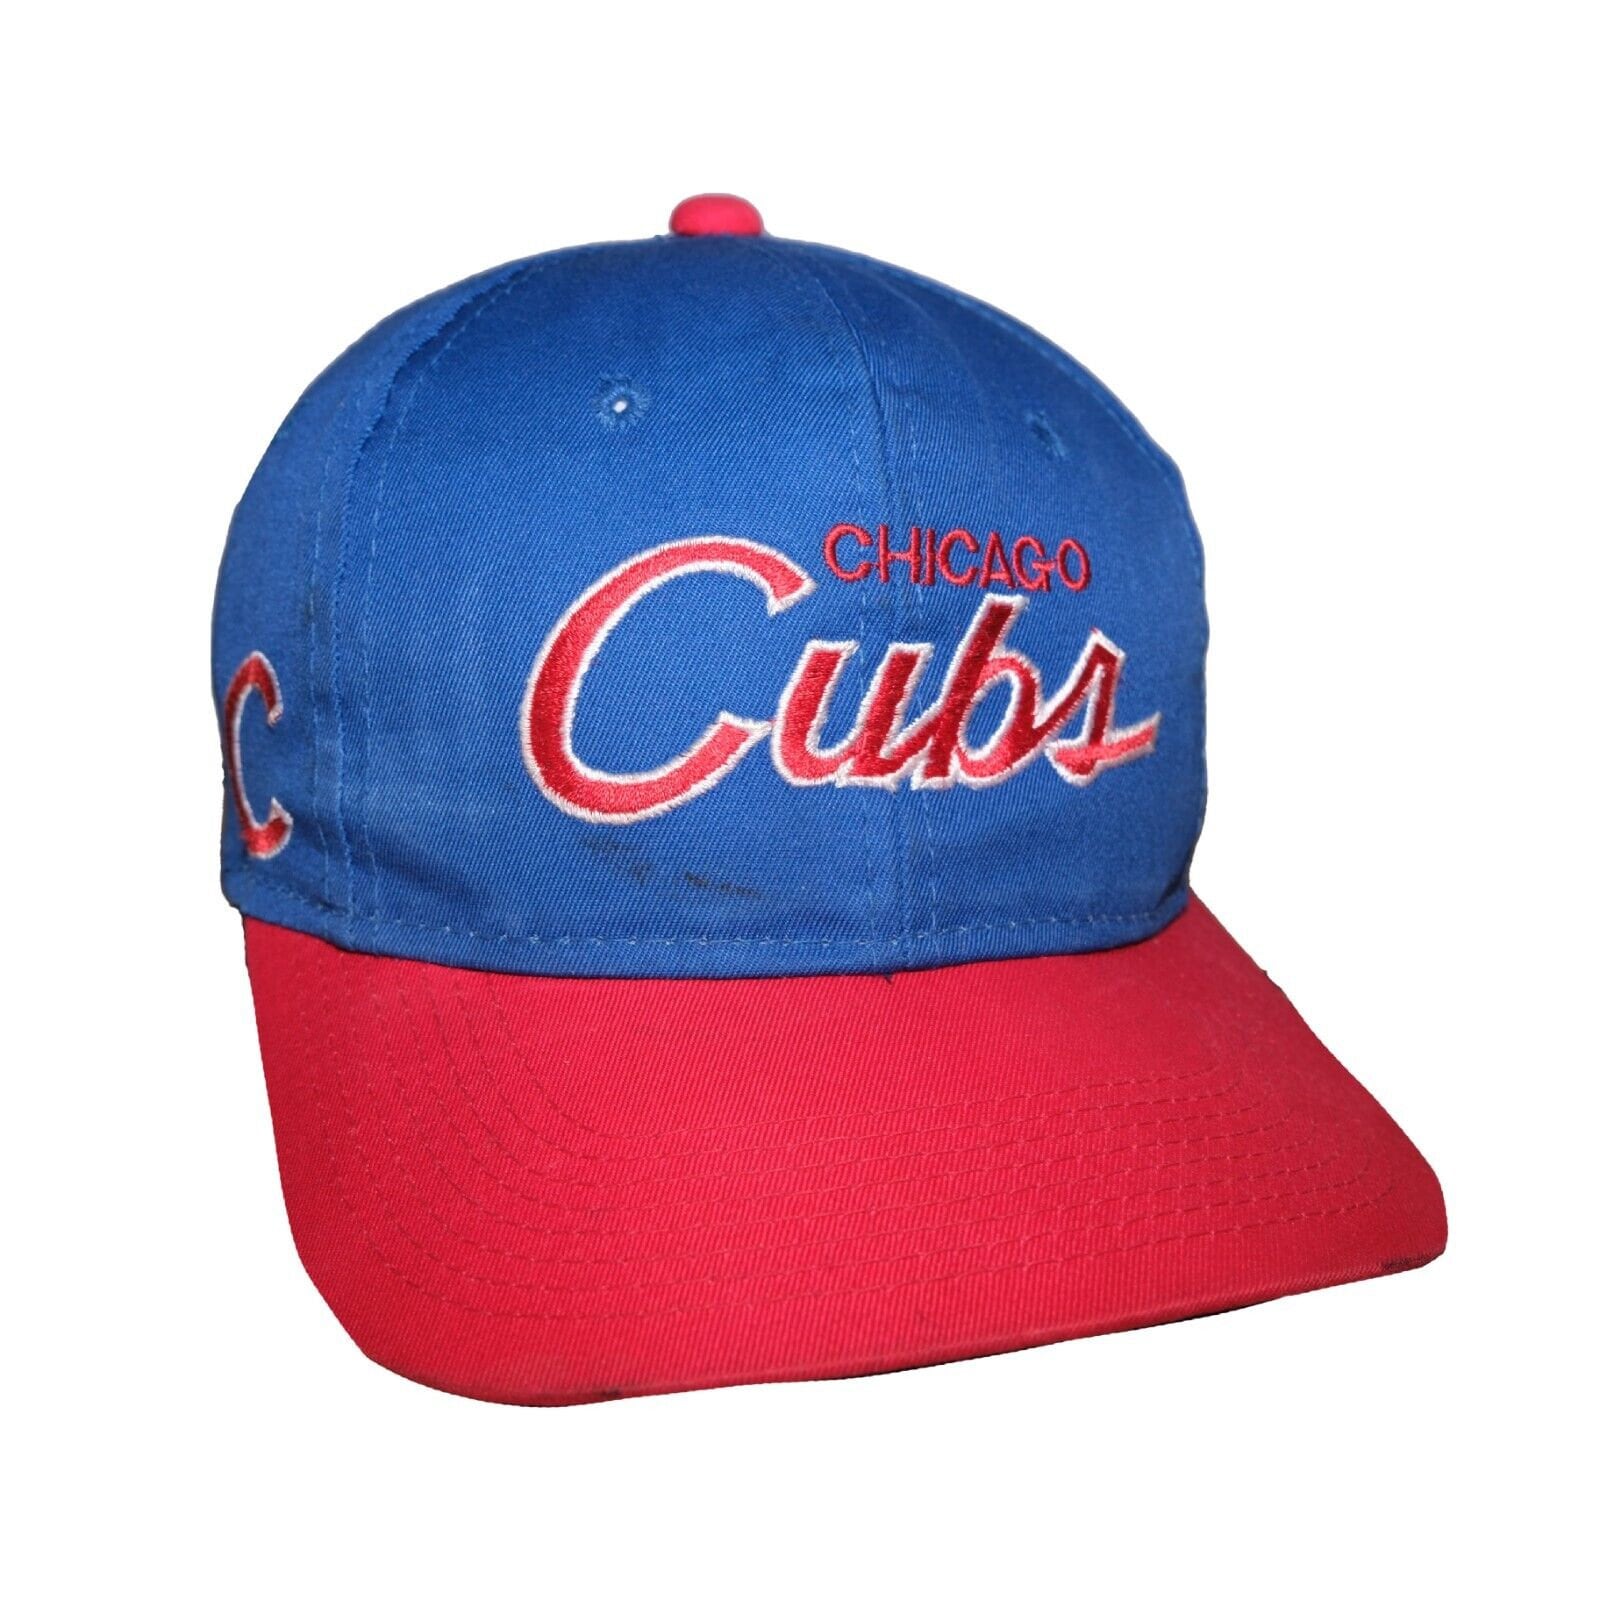 chicago cubs hat vintage